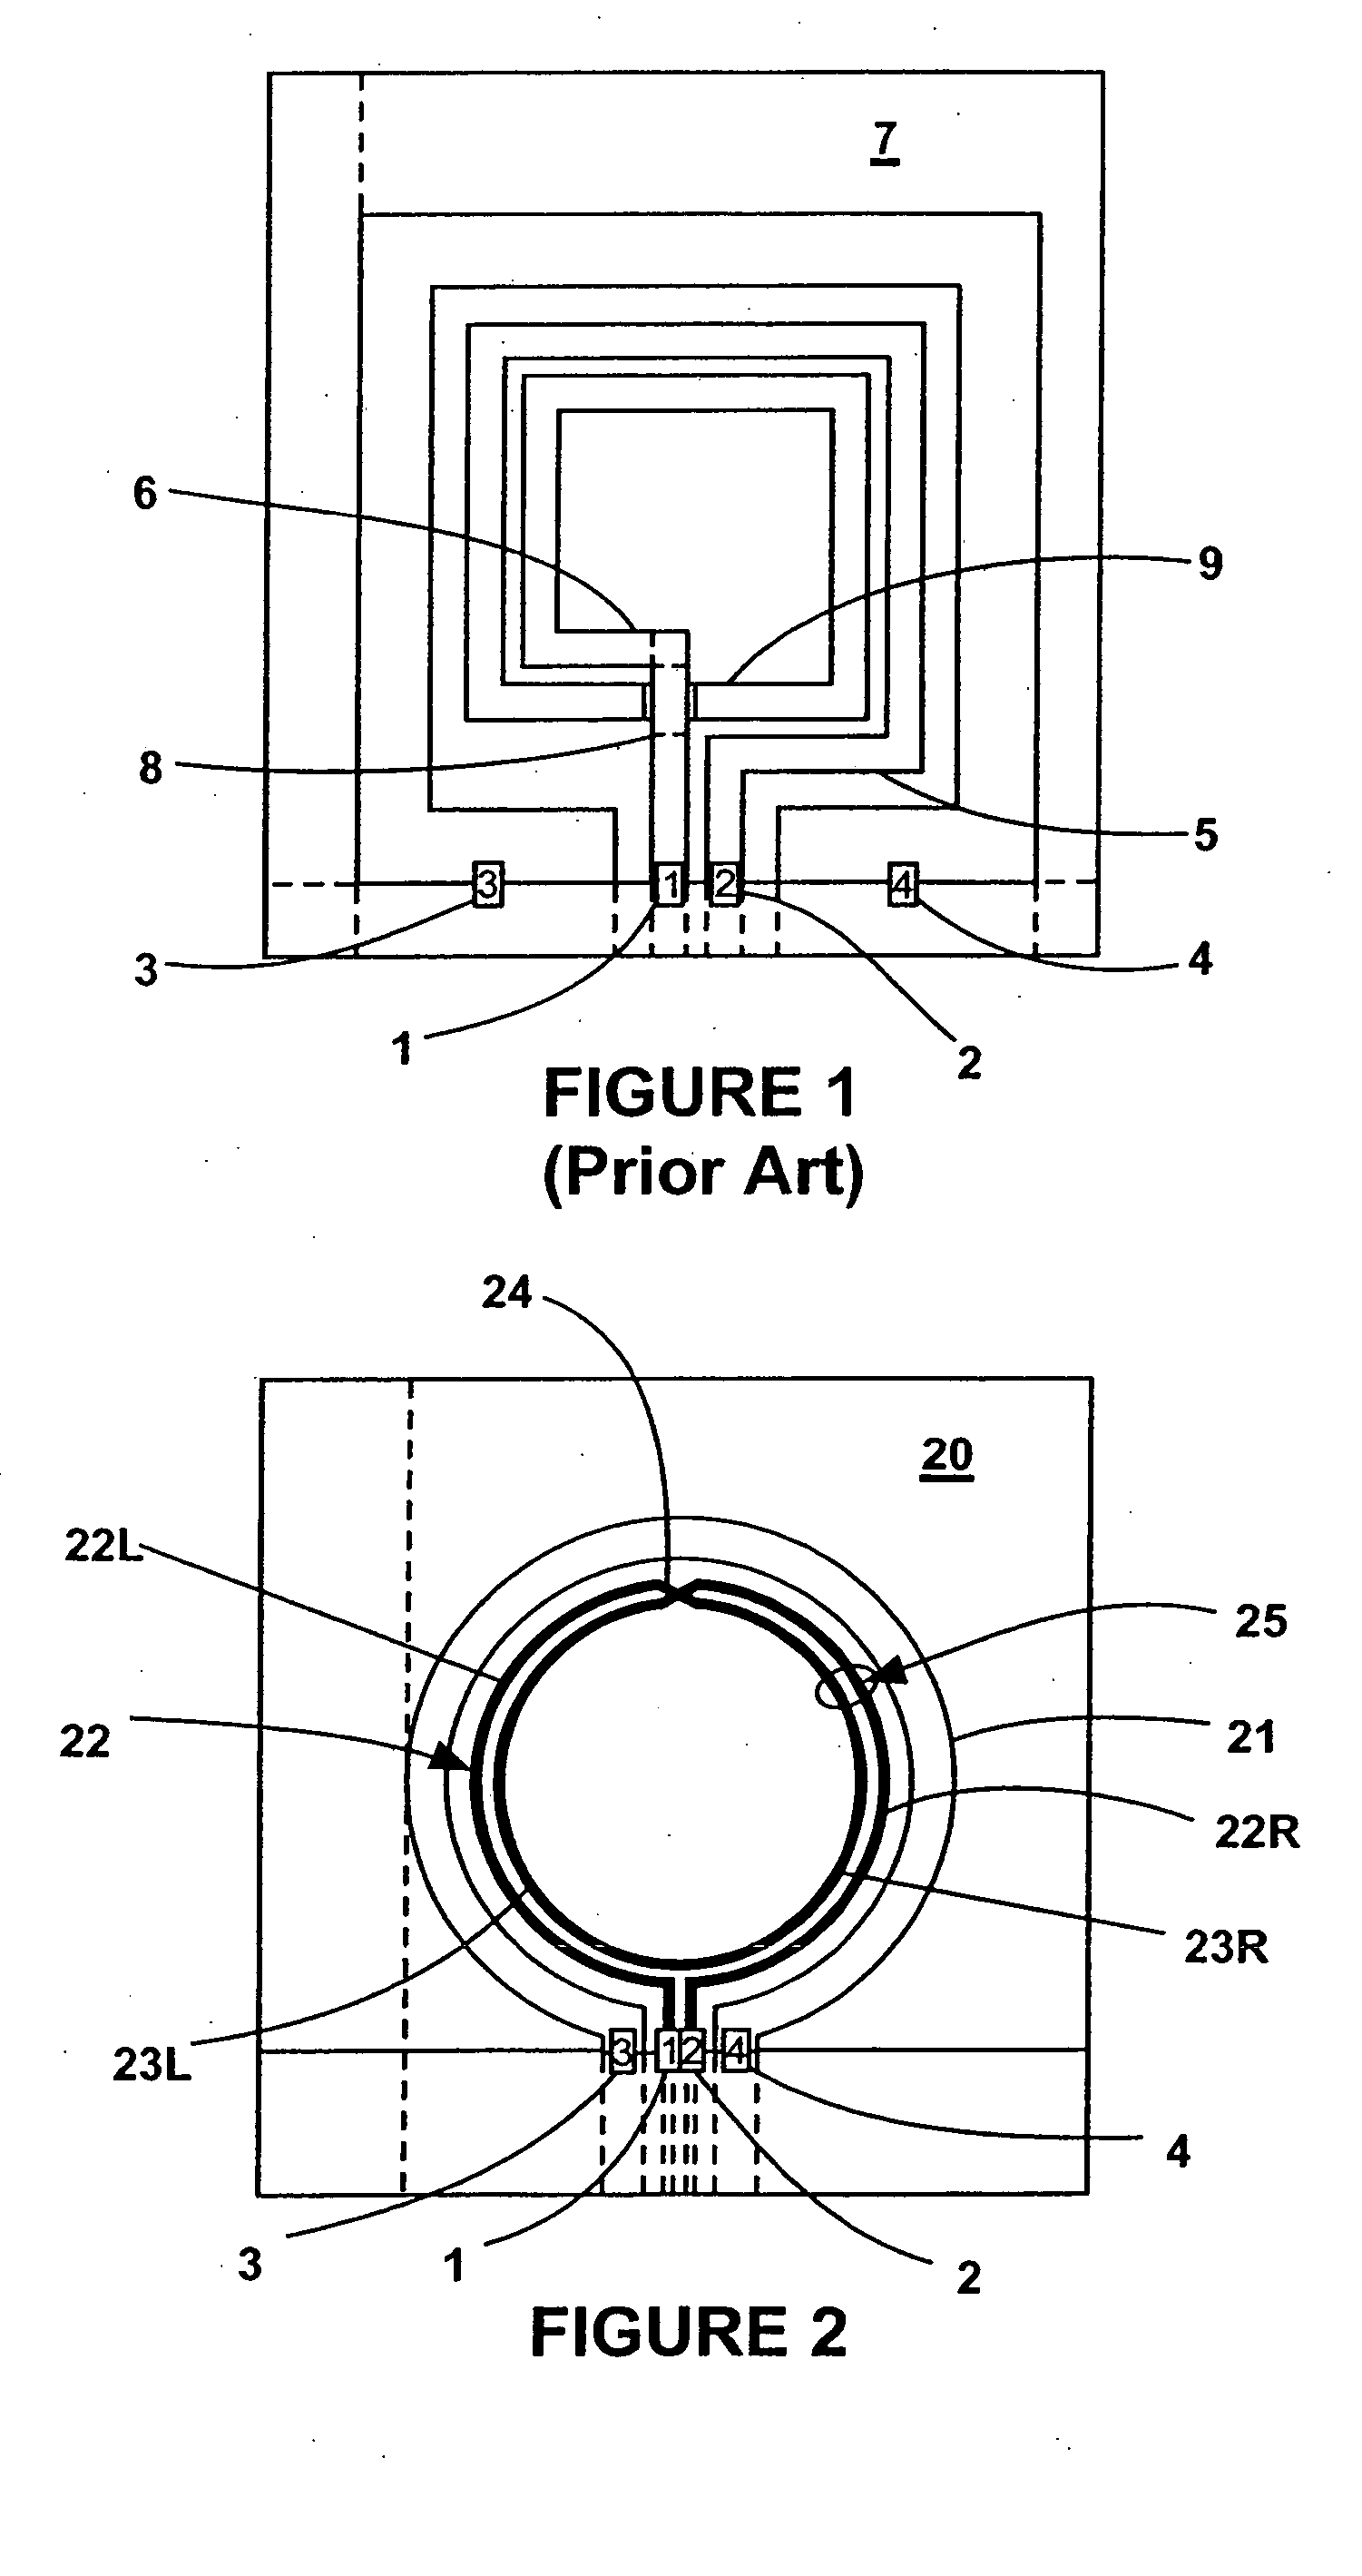 Symmetric planar inductor